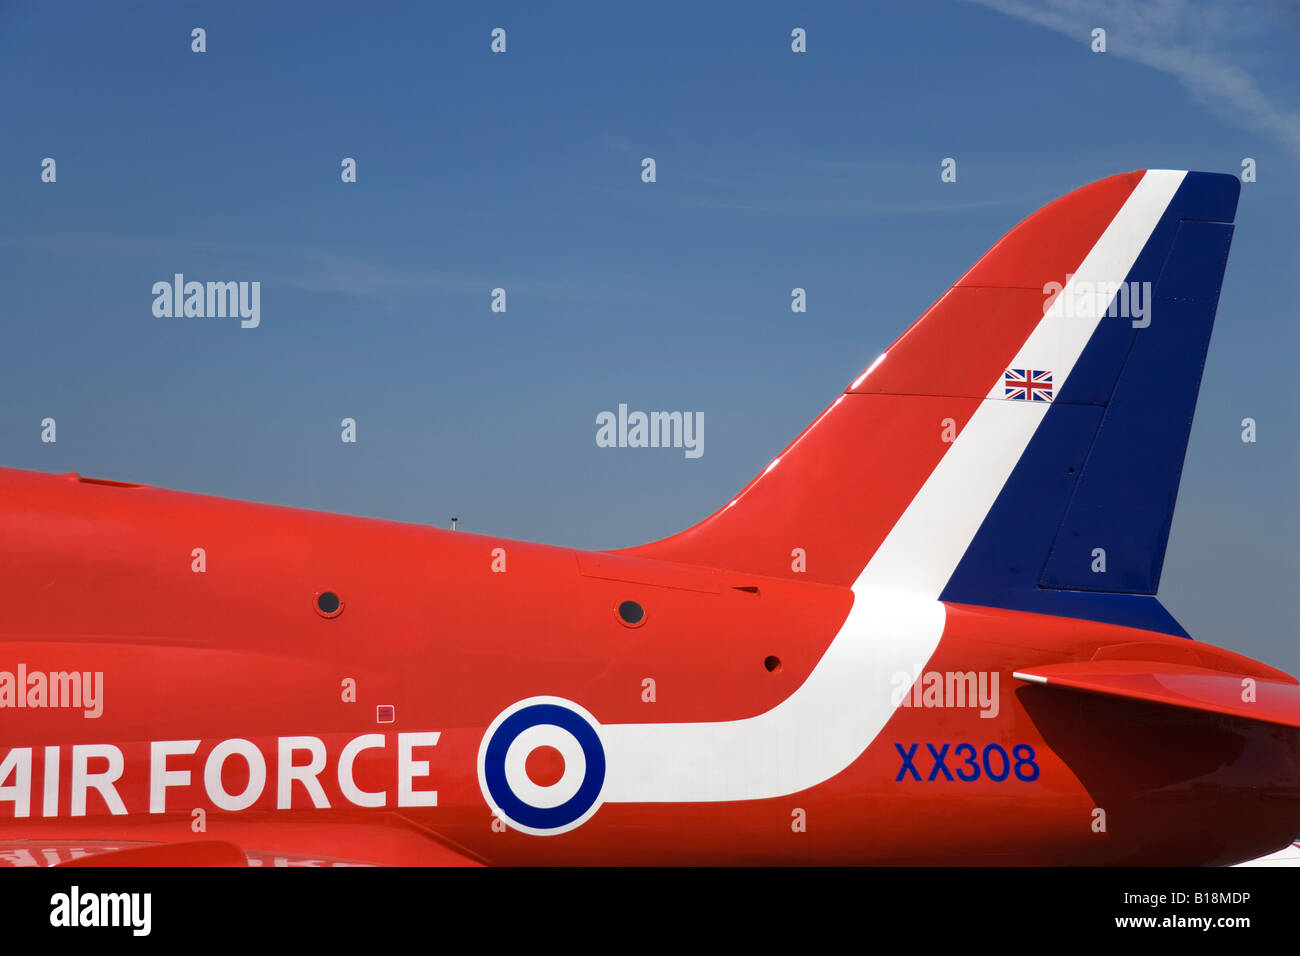 Rouge Blanc et bleu et la queue supérieure du fuselage d'un avion Hawk de BAE Systems de la Royal Air Force s'équipe de flèches rouge Banque D'Images